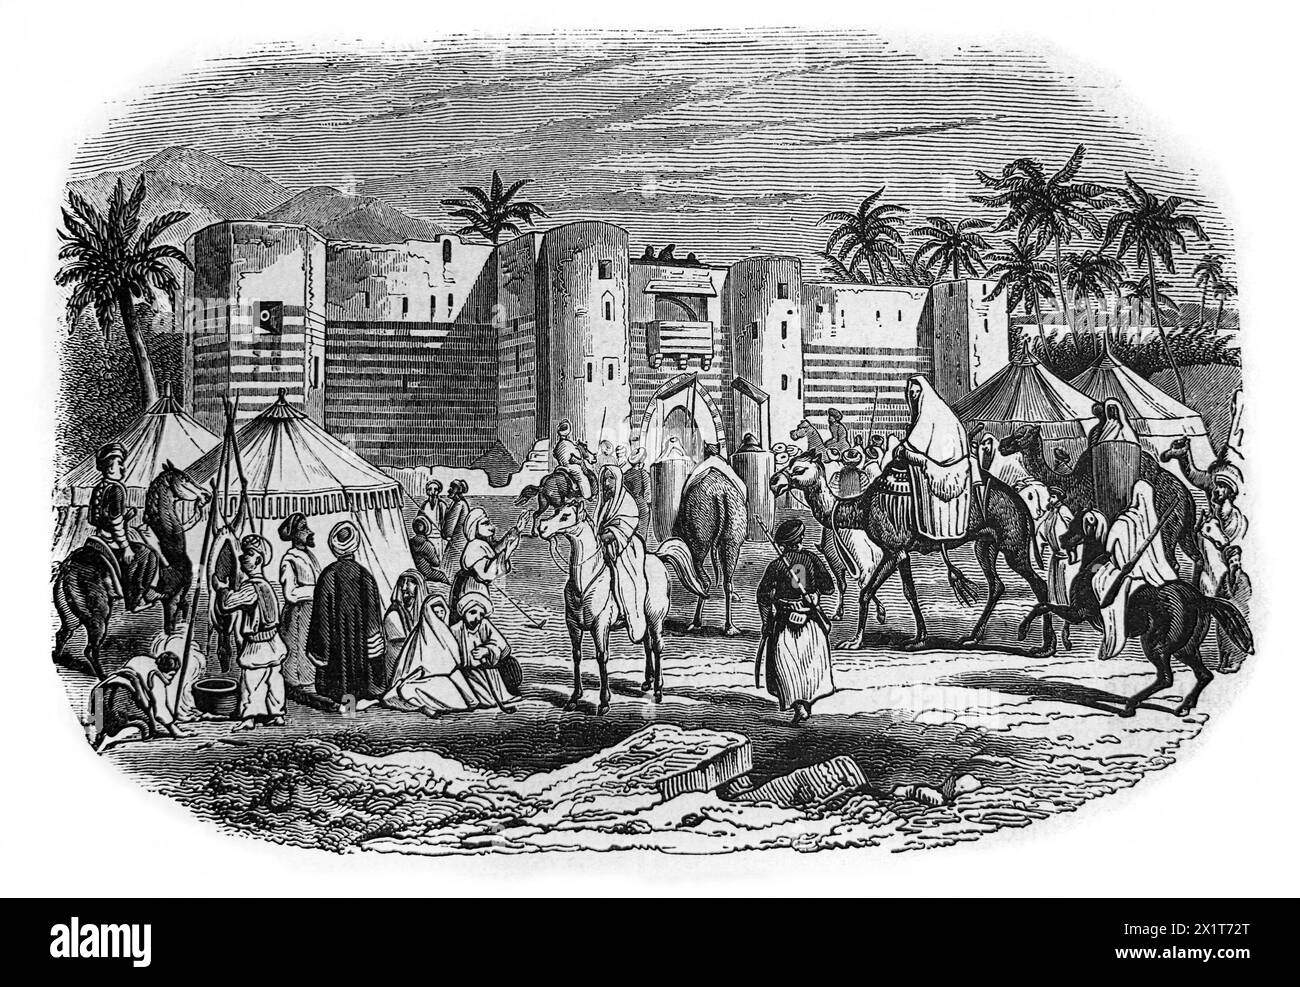 Gravure sur bois de la forteresse d'Aqaba avec l'arrivée d'une Caravane de pèlerins sur la route du pèlerinage à Makkah du XIXe siècle illustré Famil Banque D'Images